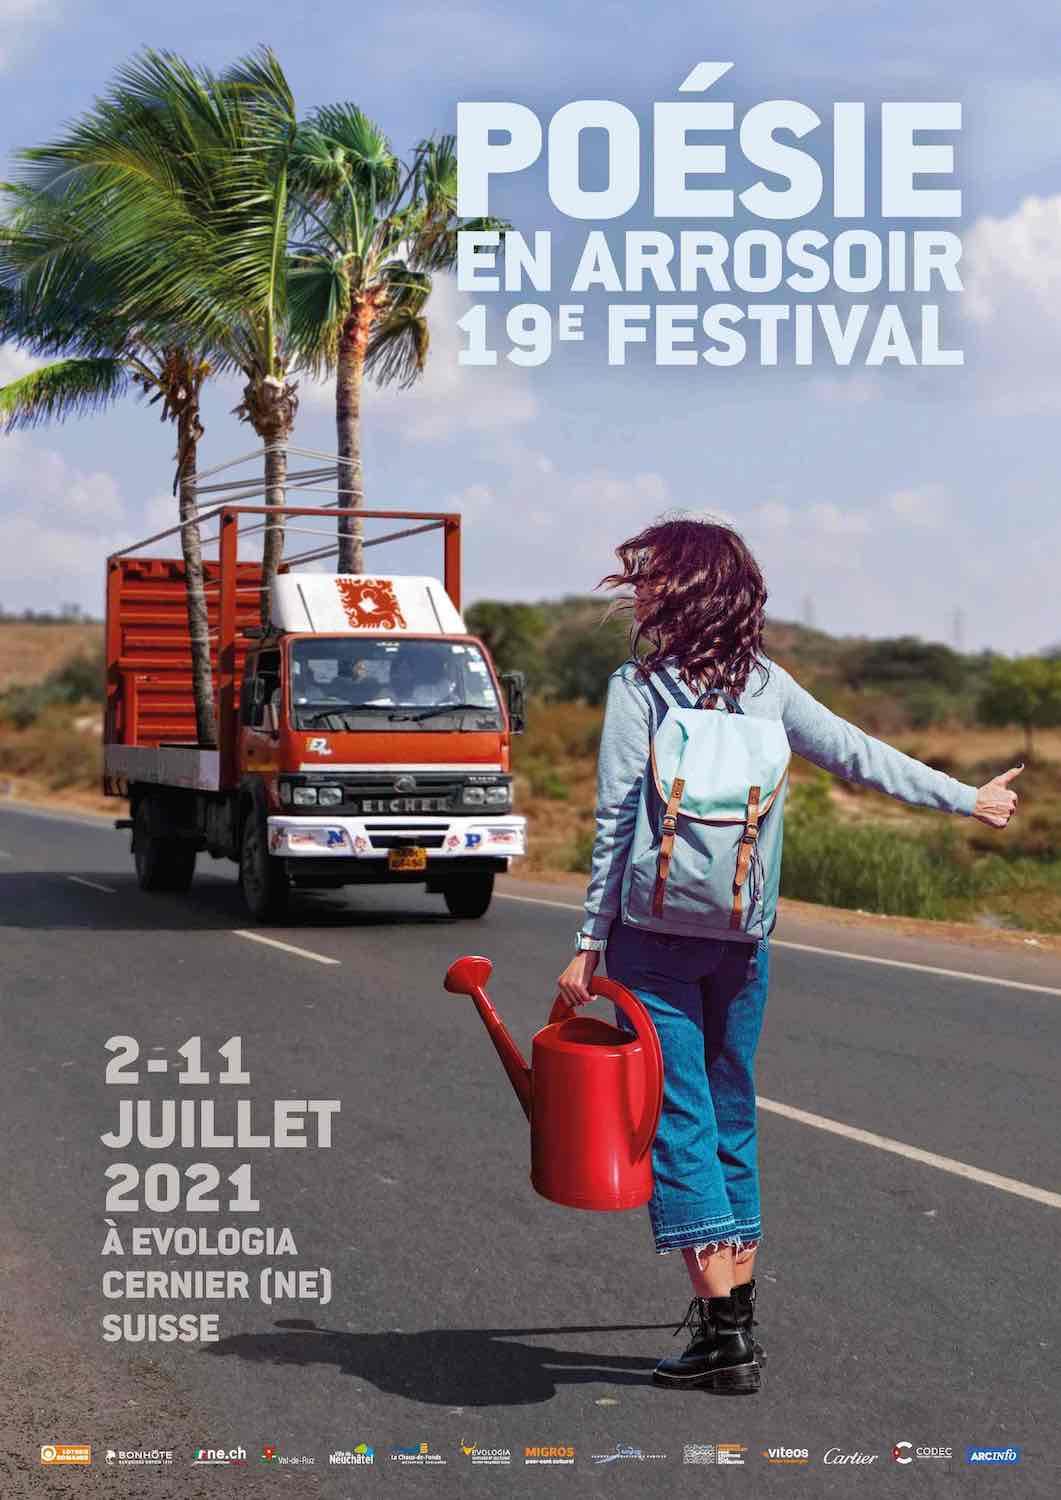 L'affiche de l'édition 2021 du festival Poésie en arrosoir. [Poésie en arrosoir]